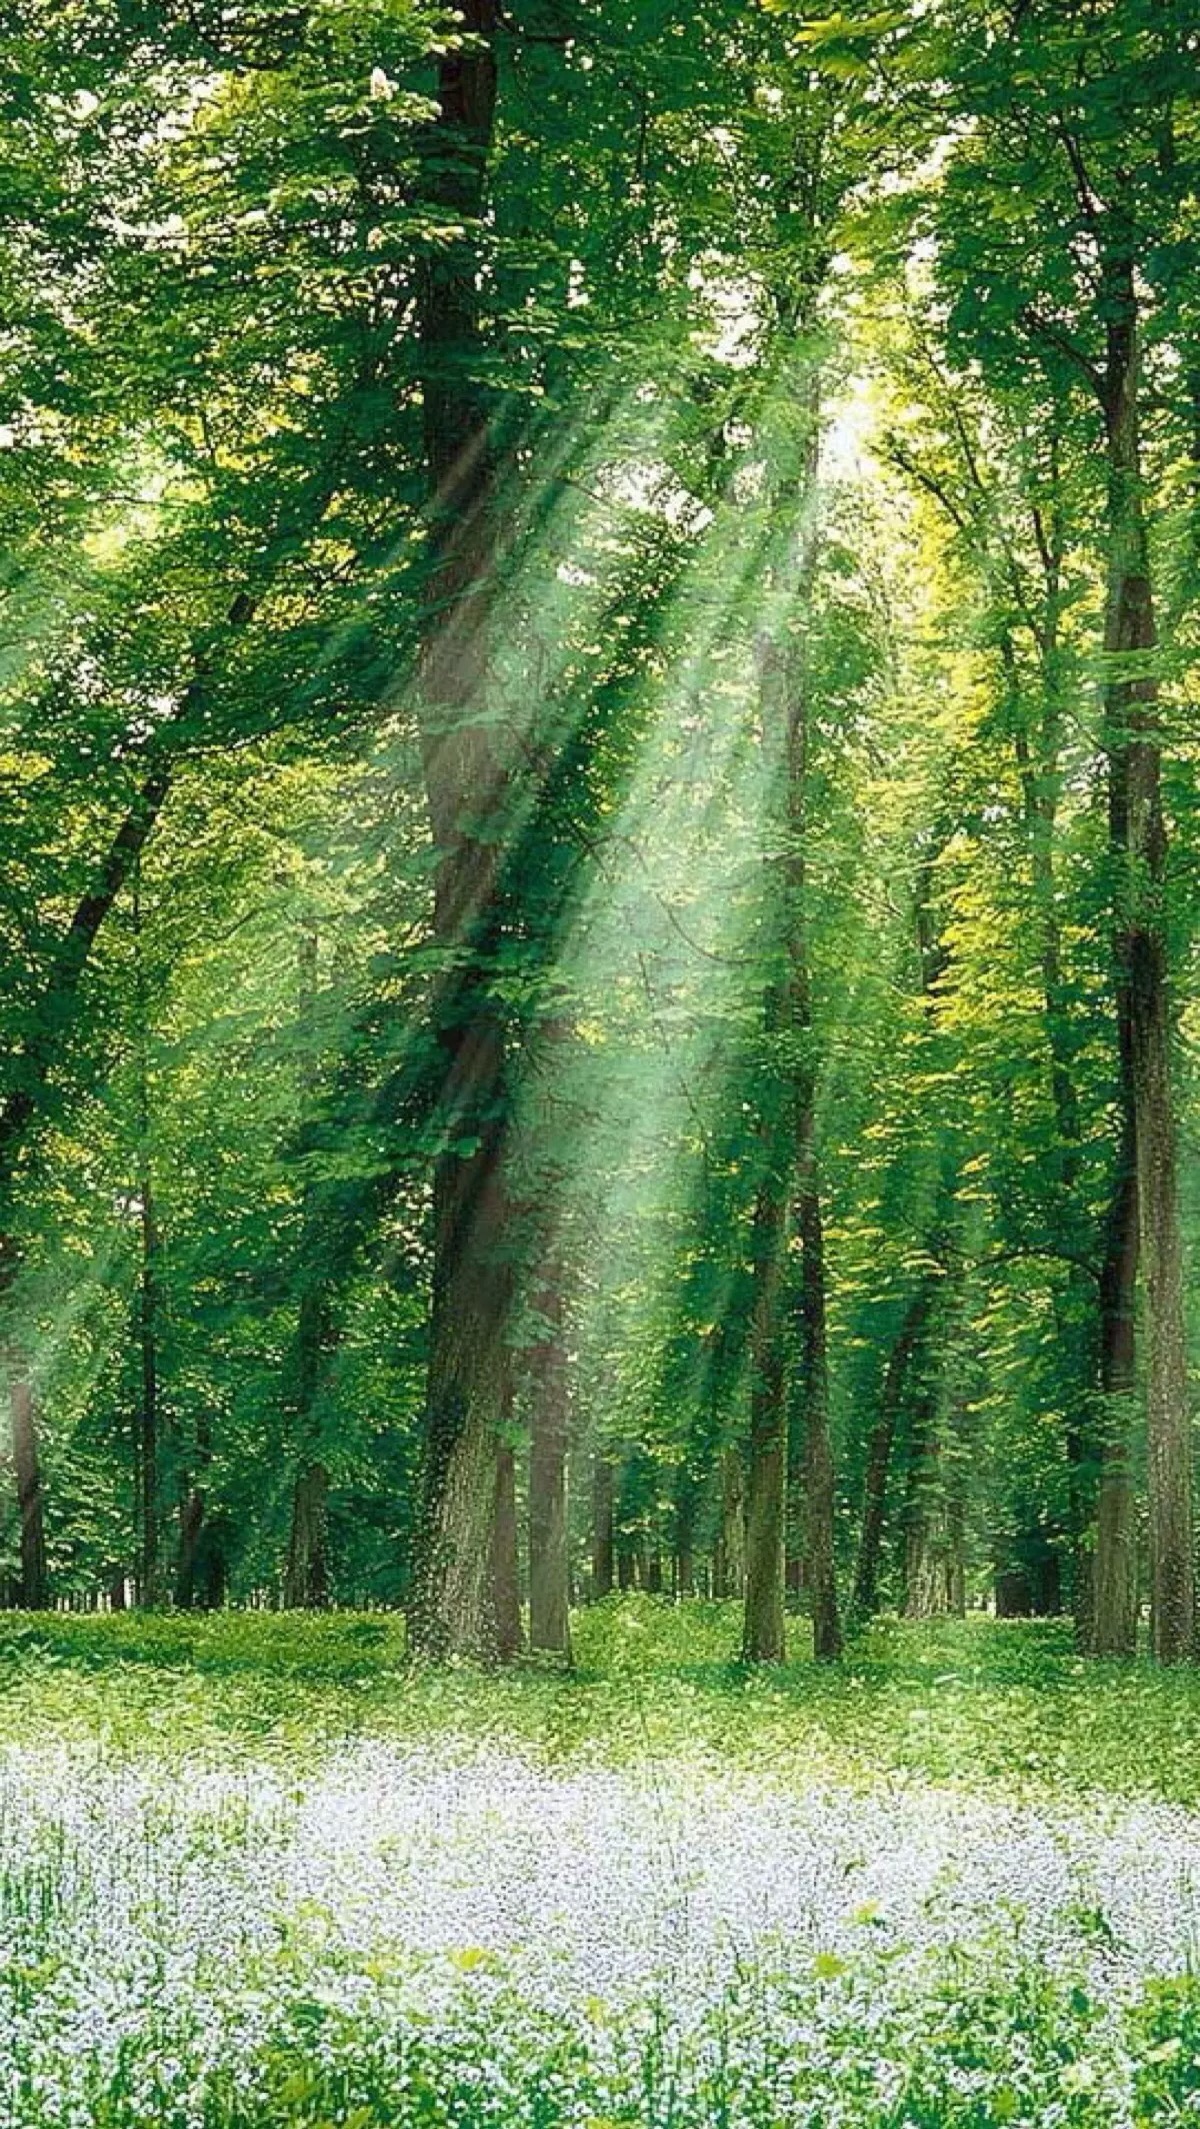 唯美自然风景 树木 阳光 森林 自然风光 绿意盎然 光影折射 唯美壁纸